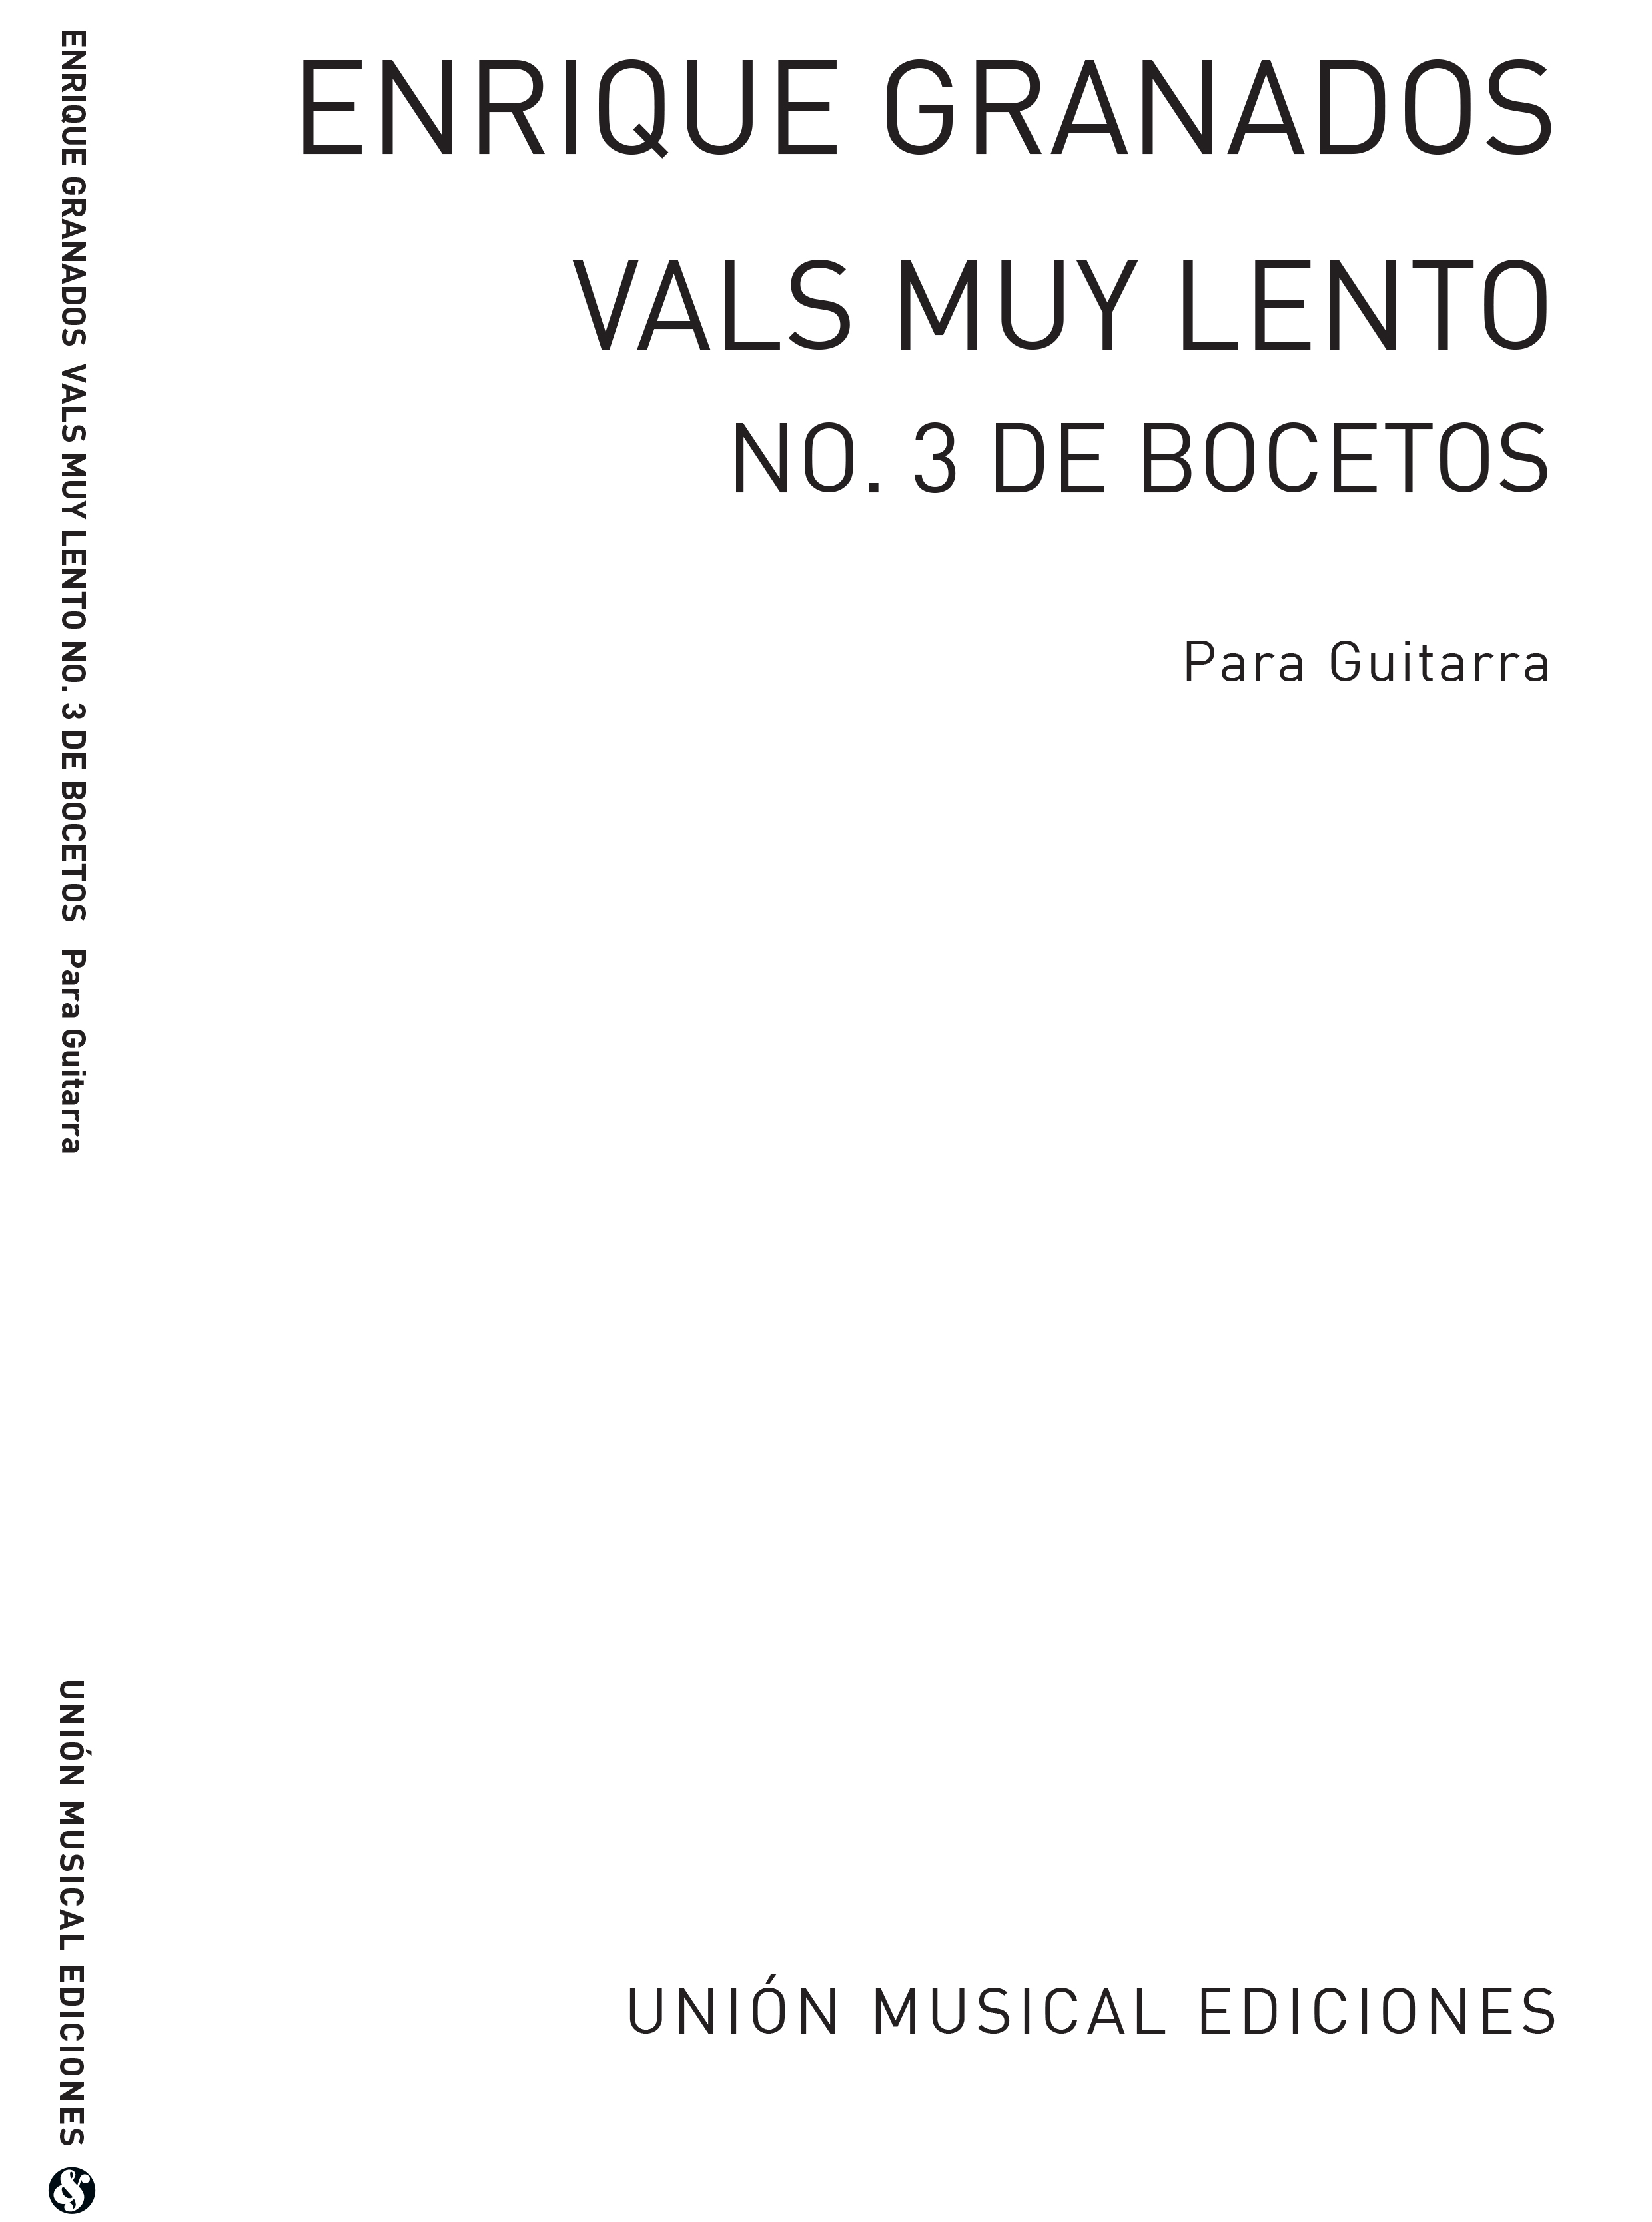 Enrique Granados: Vals Muy Lento No 3 De Bocetosfor Guitar: Guitar: Instrumental